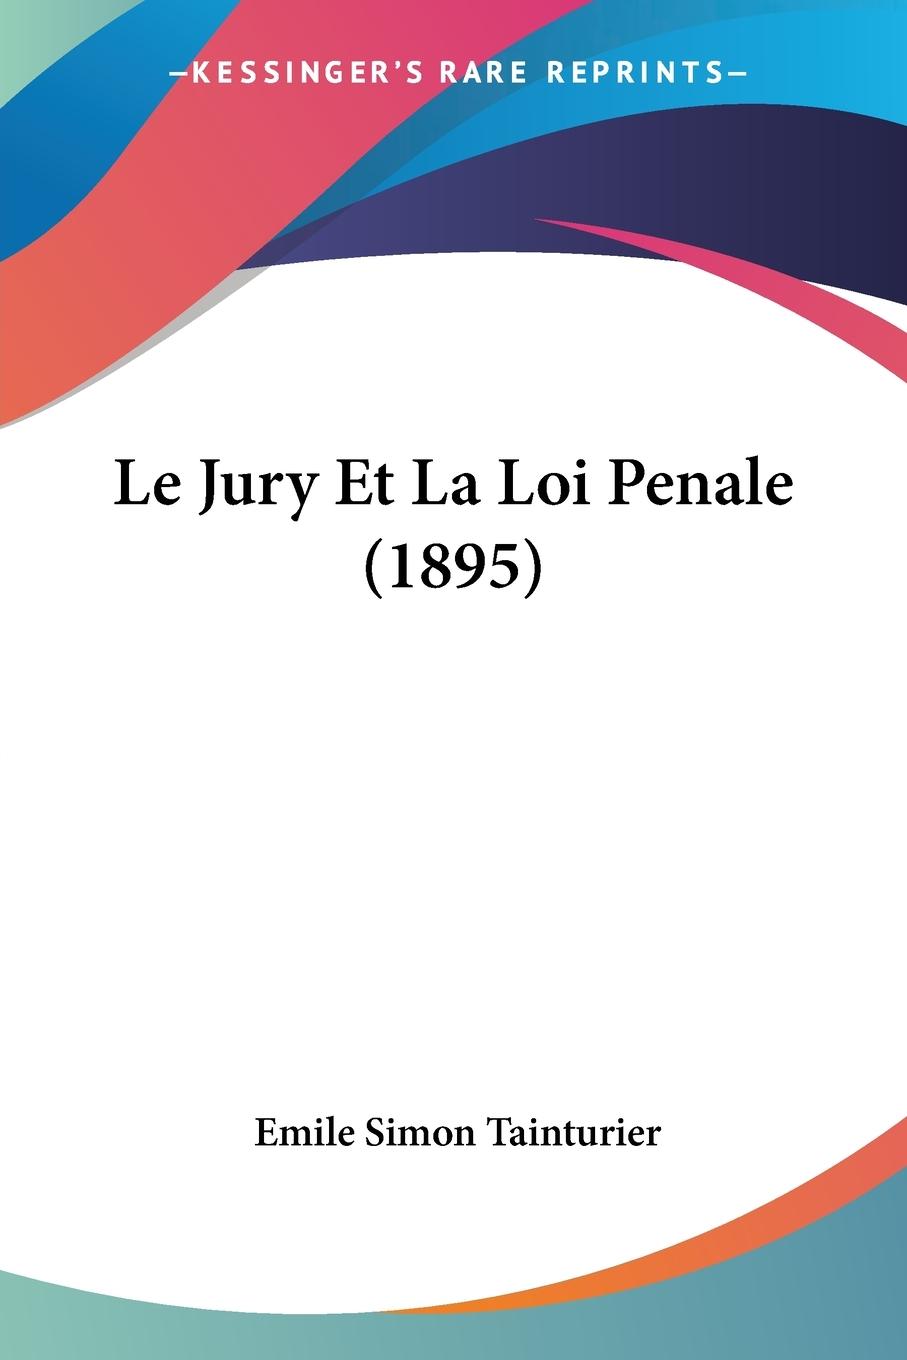 Le Jury Et La Loi Penale (1895) - Tainturier, Emile Simon